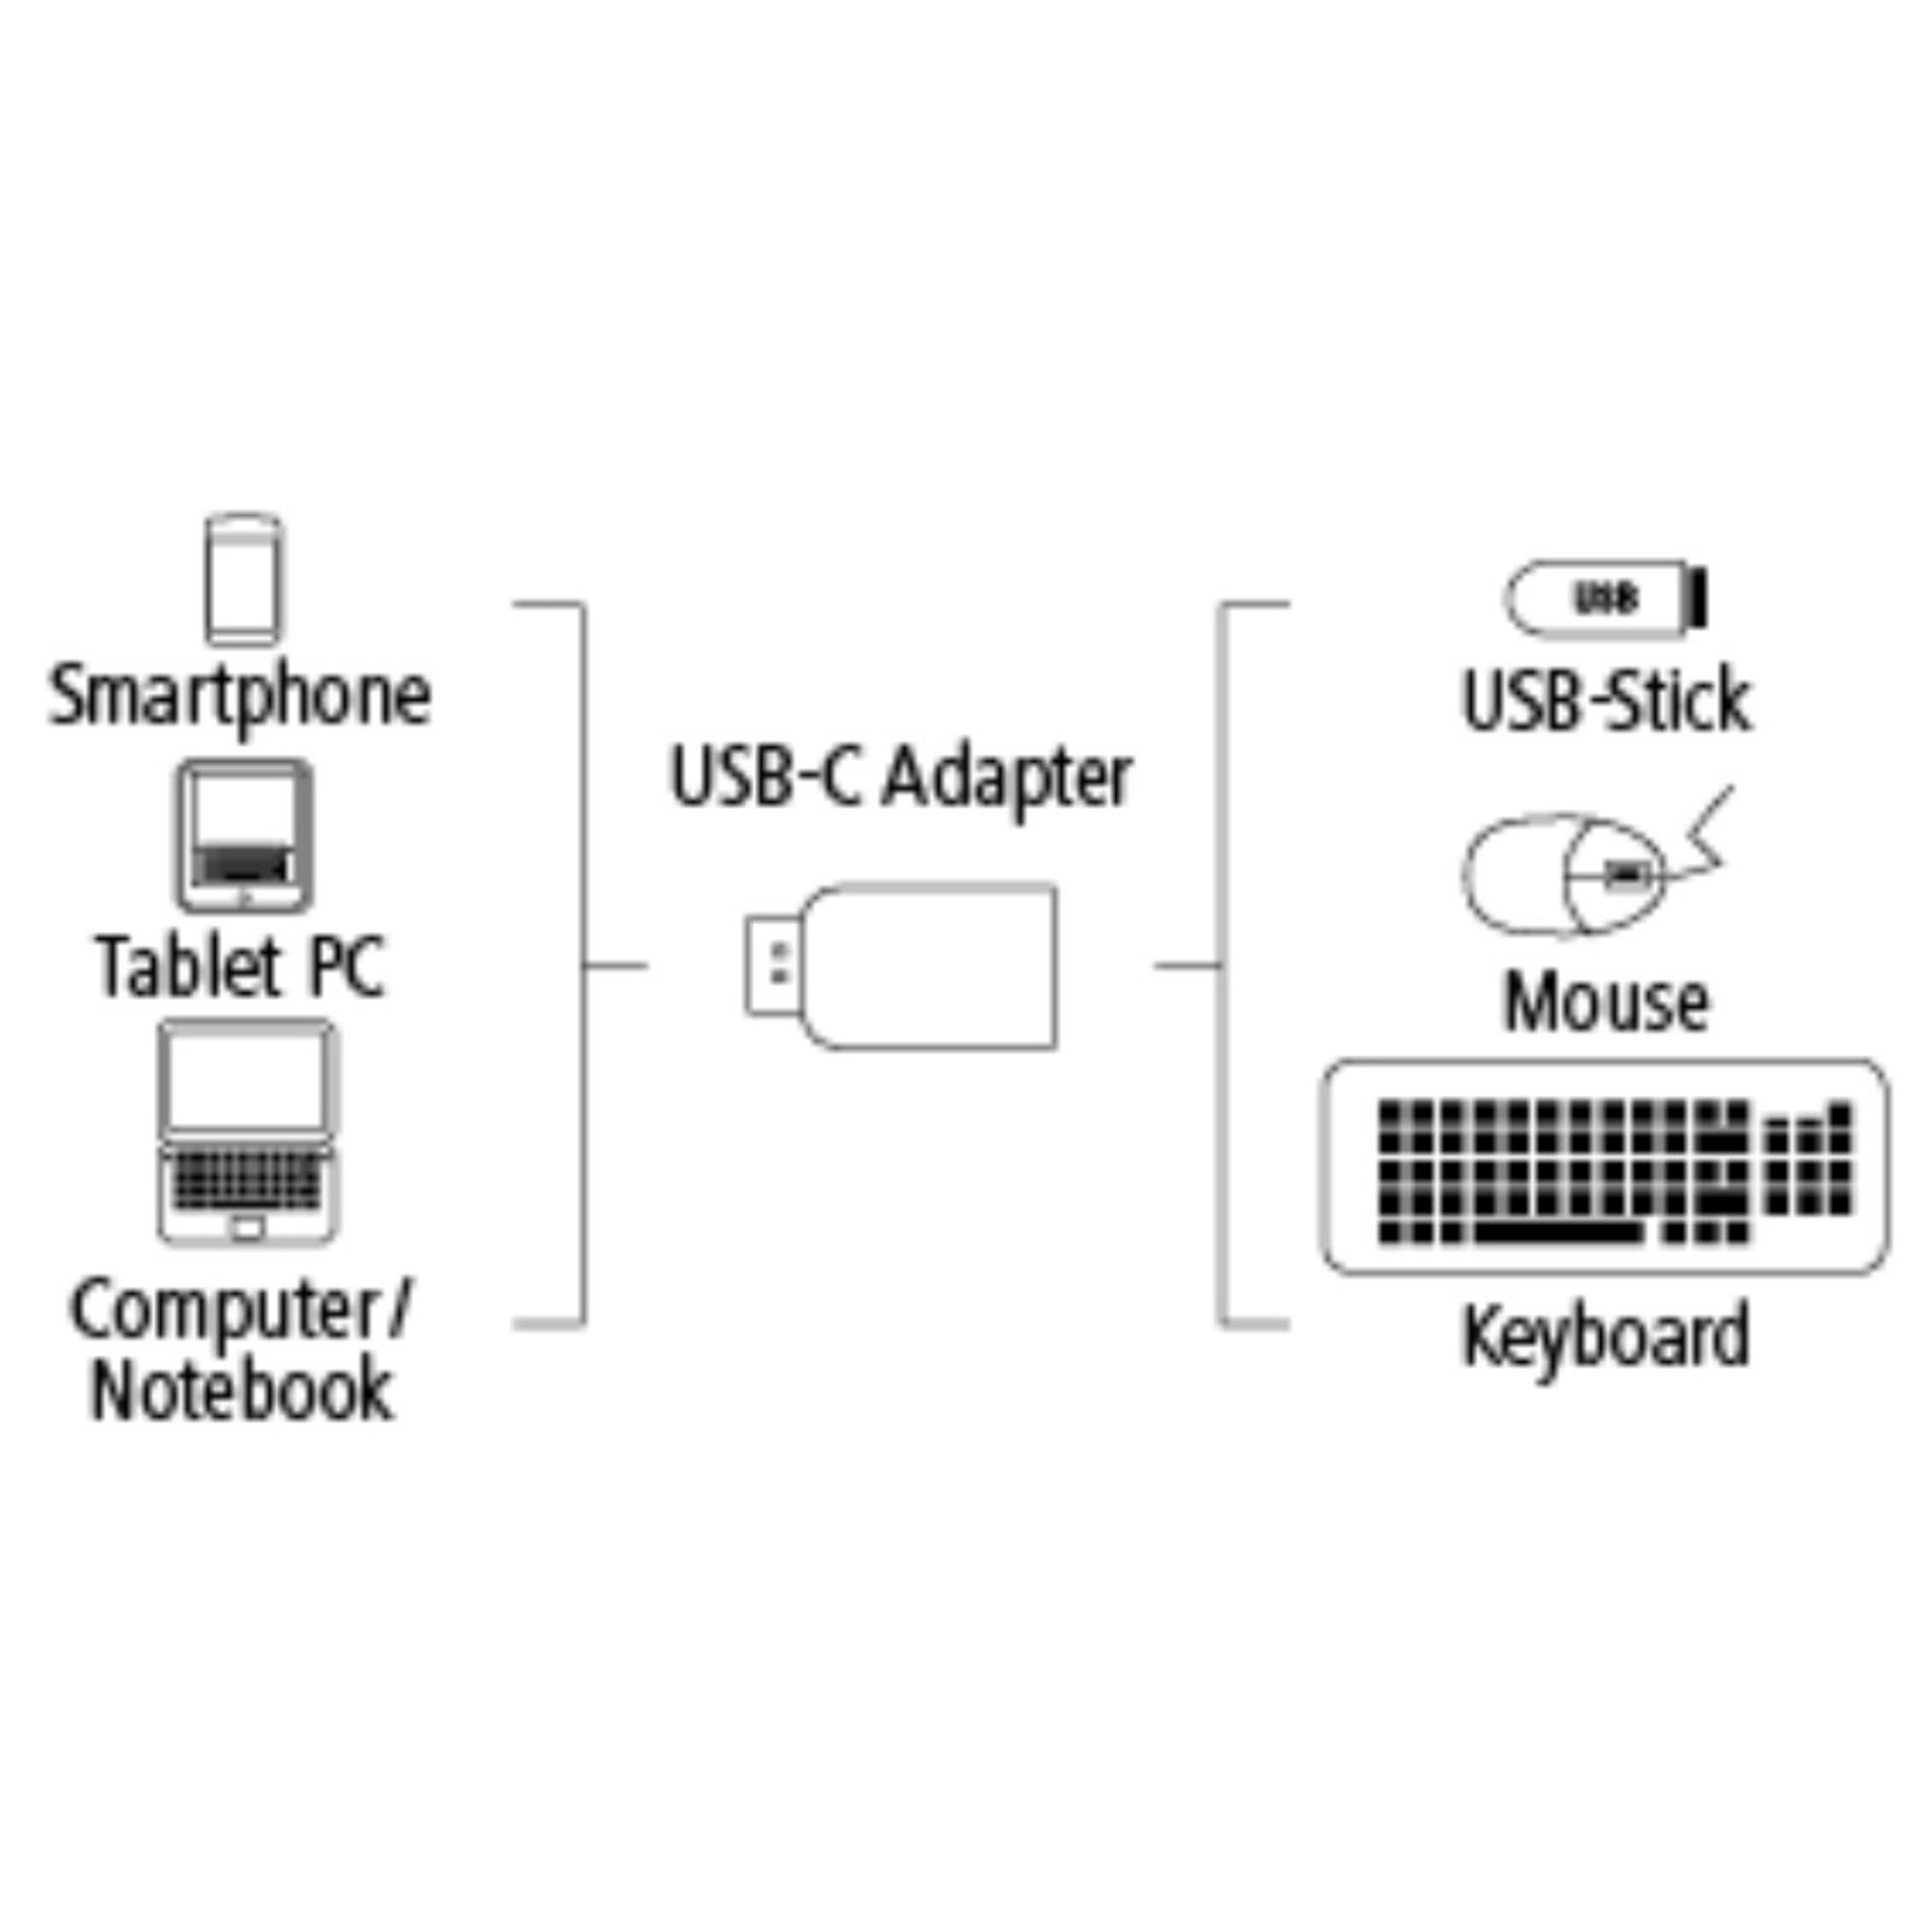 STECKER-USB HAMA USB KUPP, ADAP.C Adapter A 135721